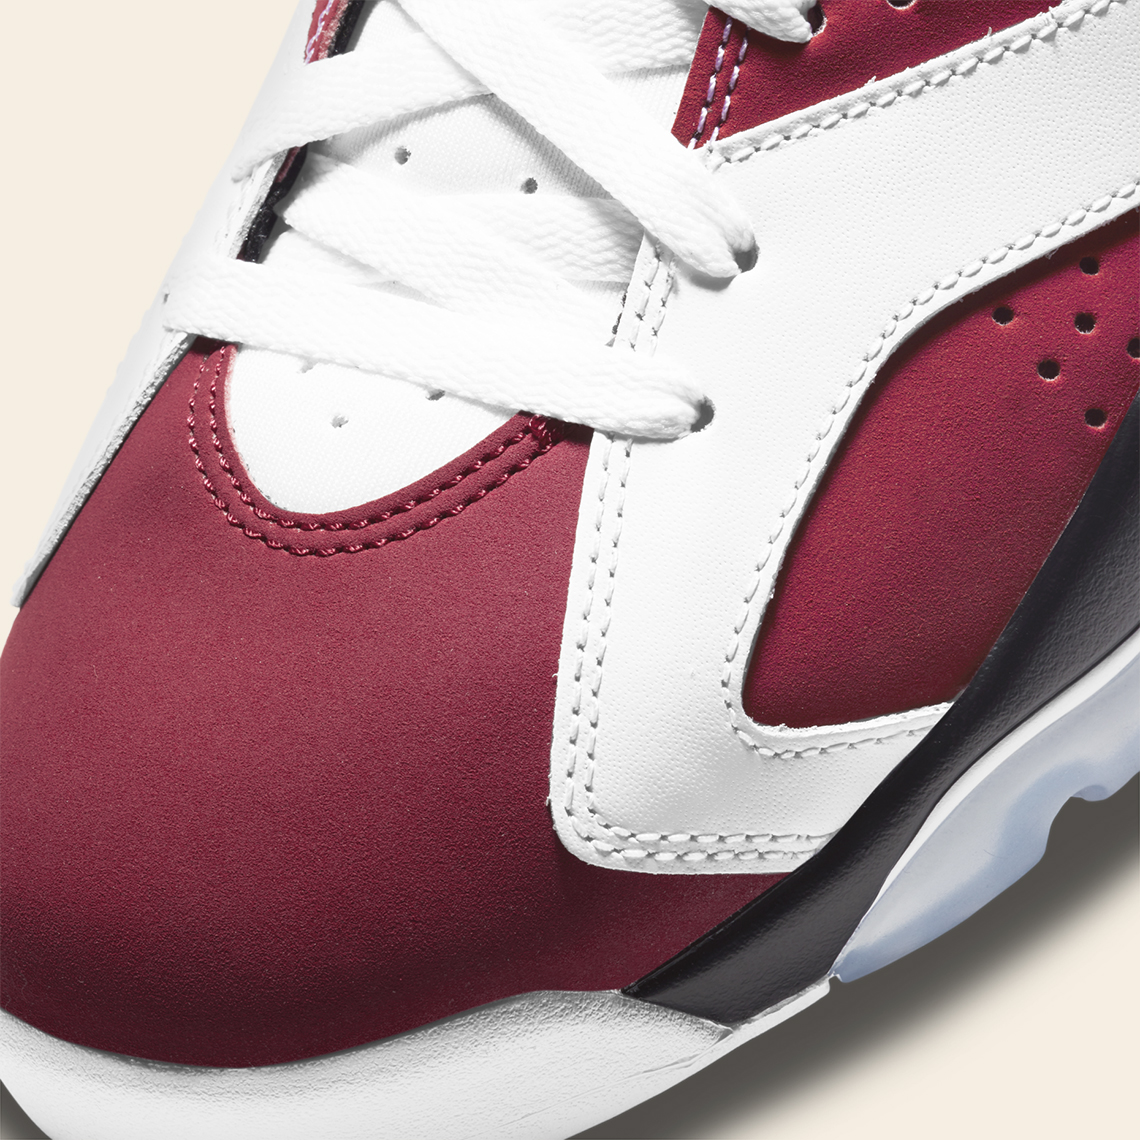 tom Skaldet Klage Air Jordan 6 "Carmine" 2021 - Release Date + Photos | SneakerNews.com